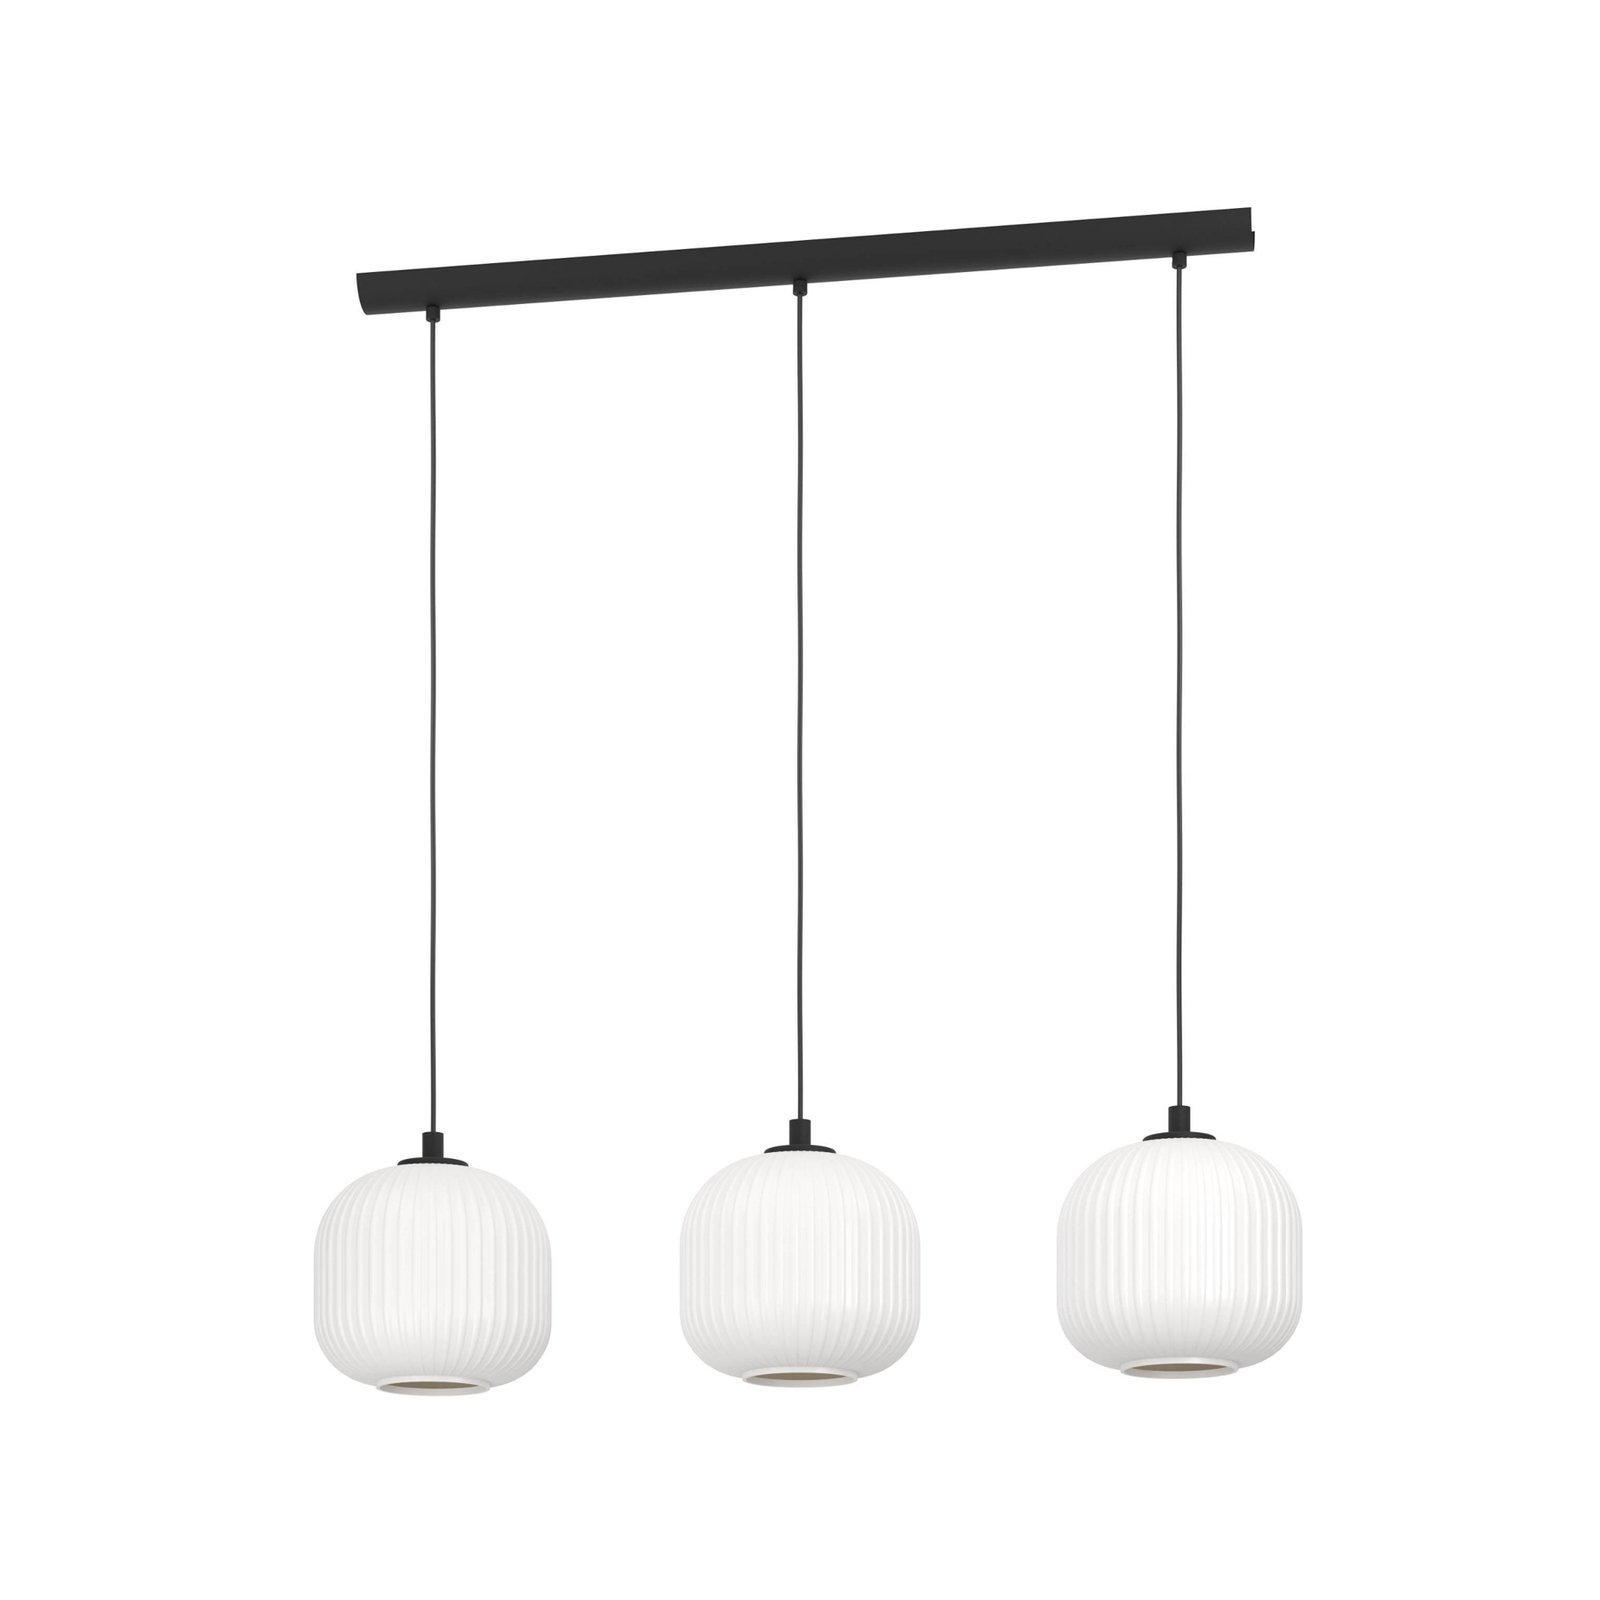 Mantunalle hængelampe, længde 120 cm, sort/hvid, 3 lyskilder.